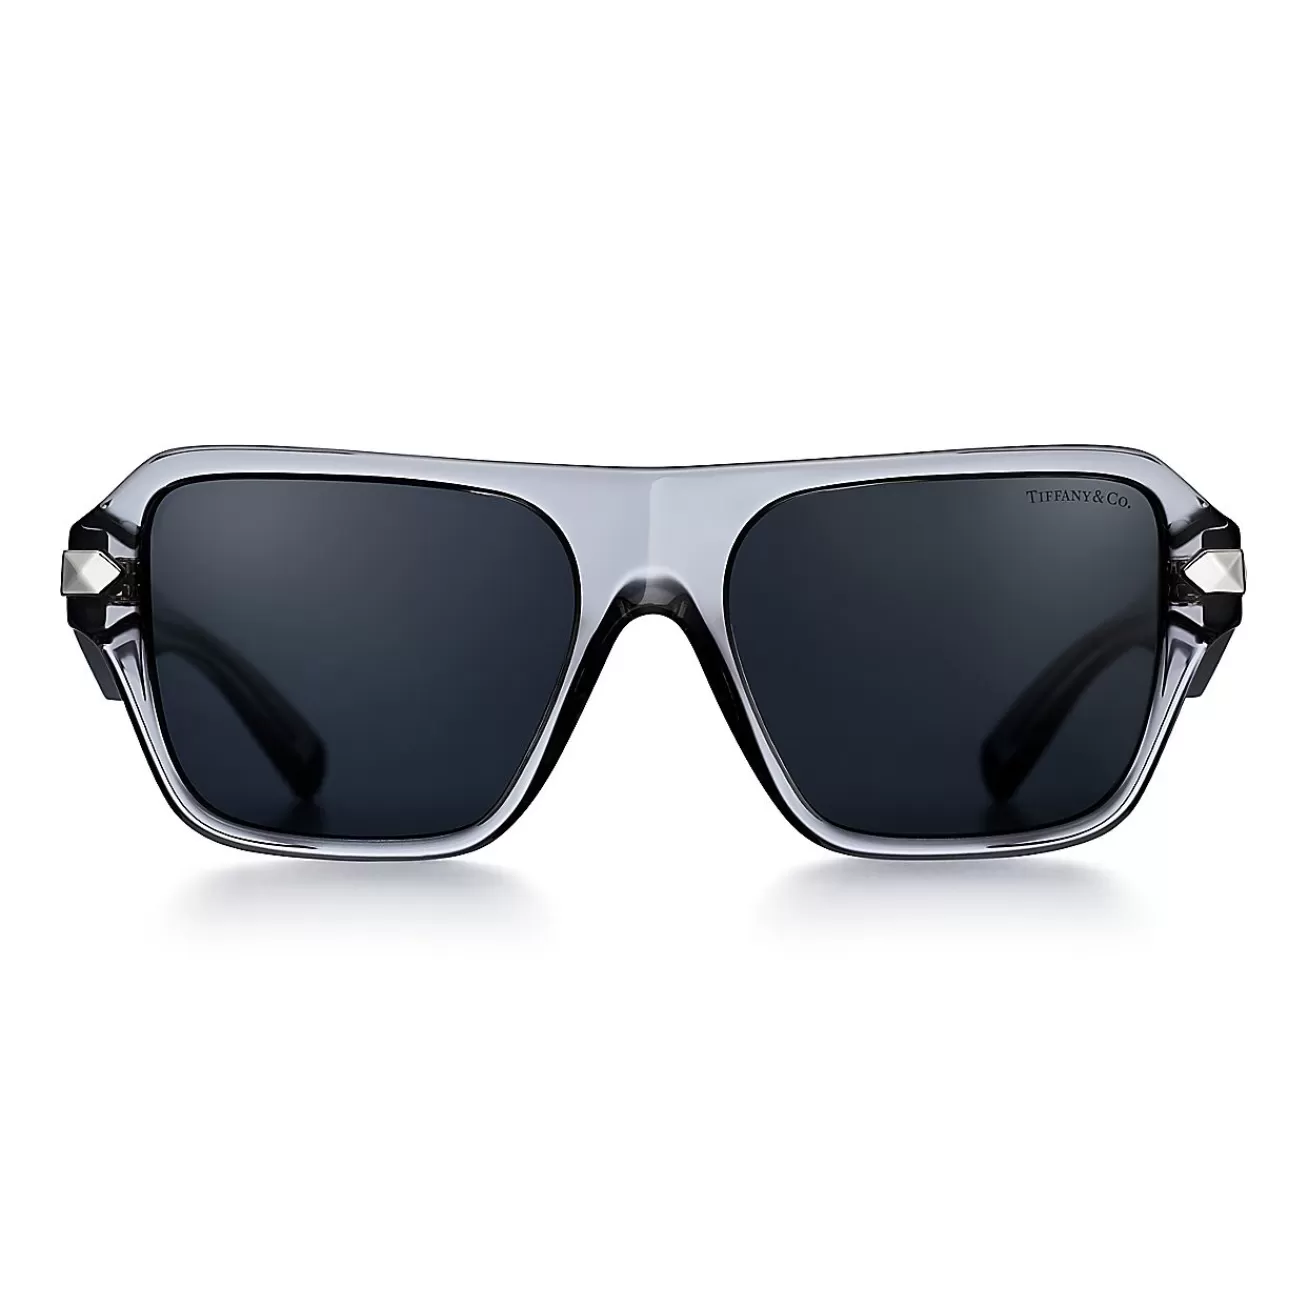 Tiffany & Co. Tiffany Sunglasses in Dark Gray Acetate with Gray Lenses | ^Women Sunglasses | Women's Accessories